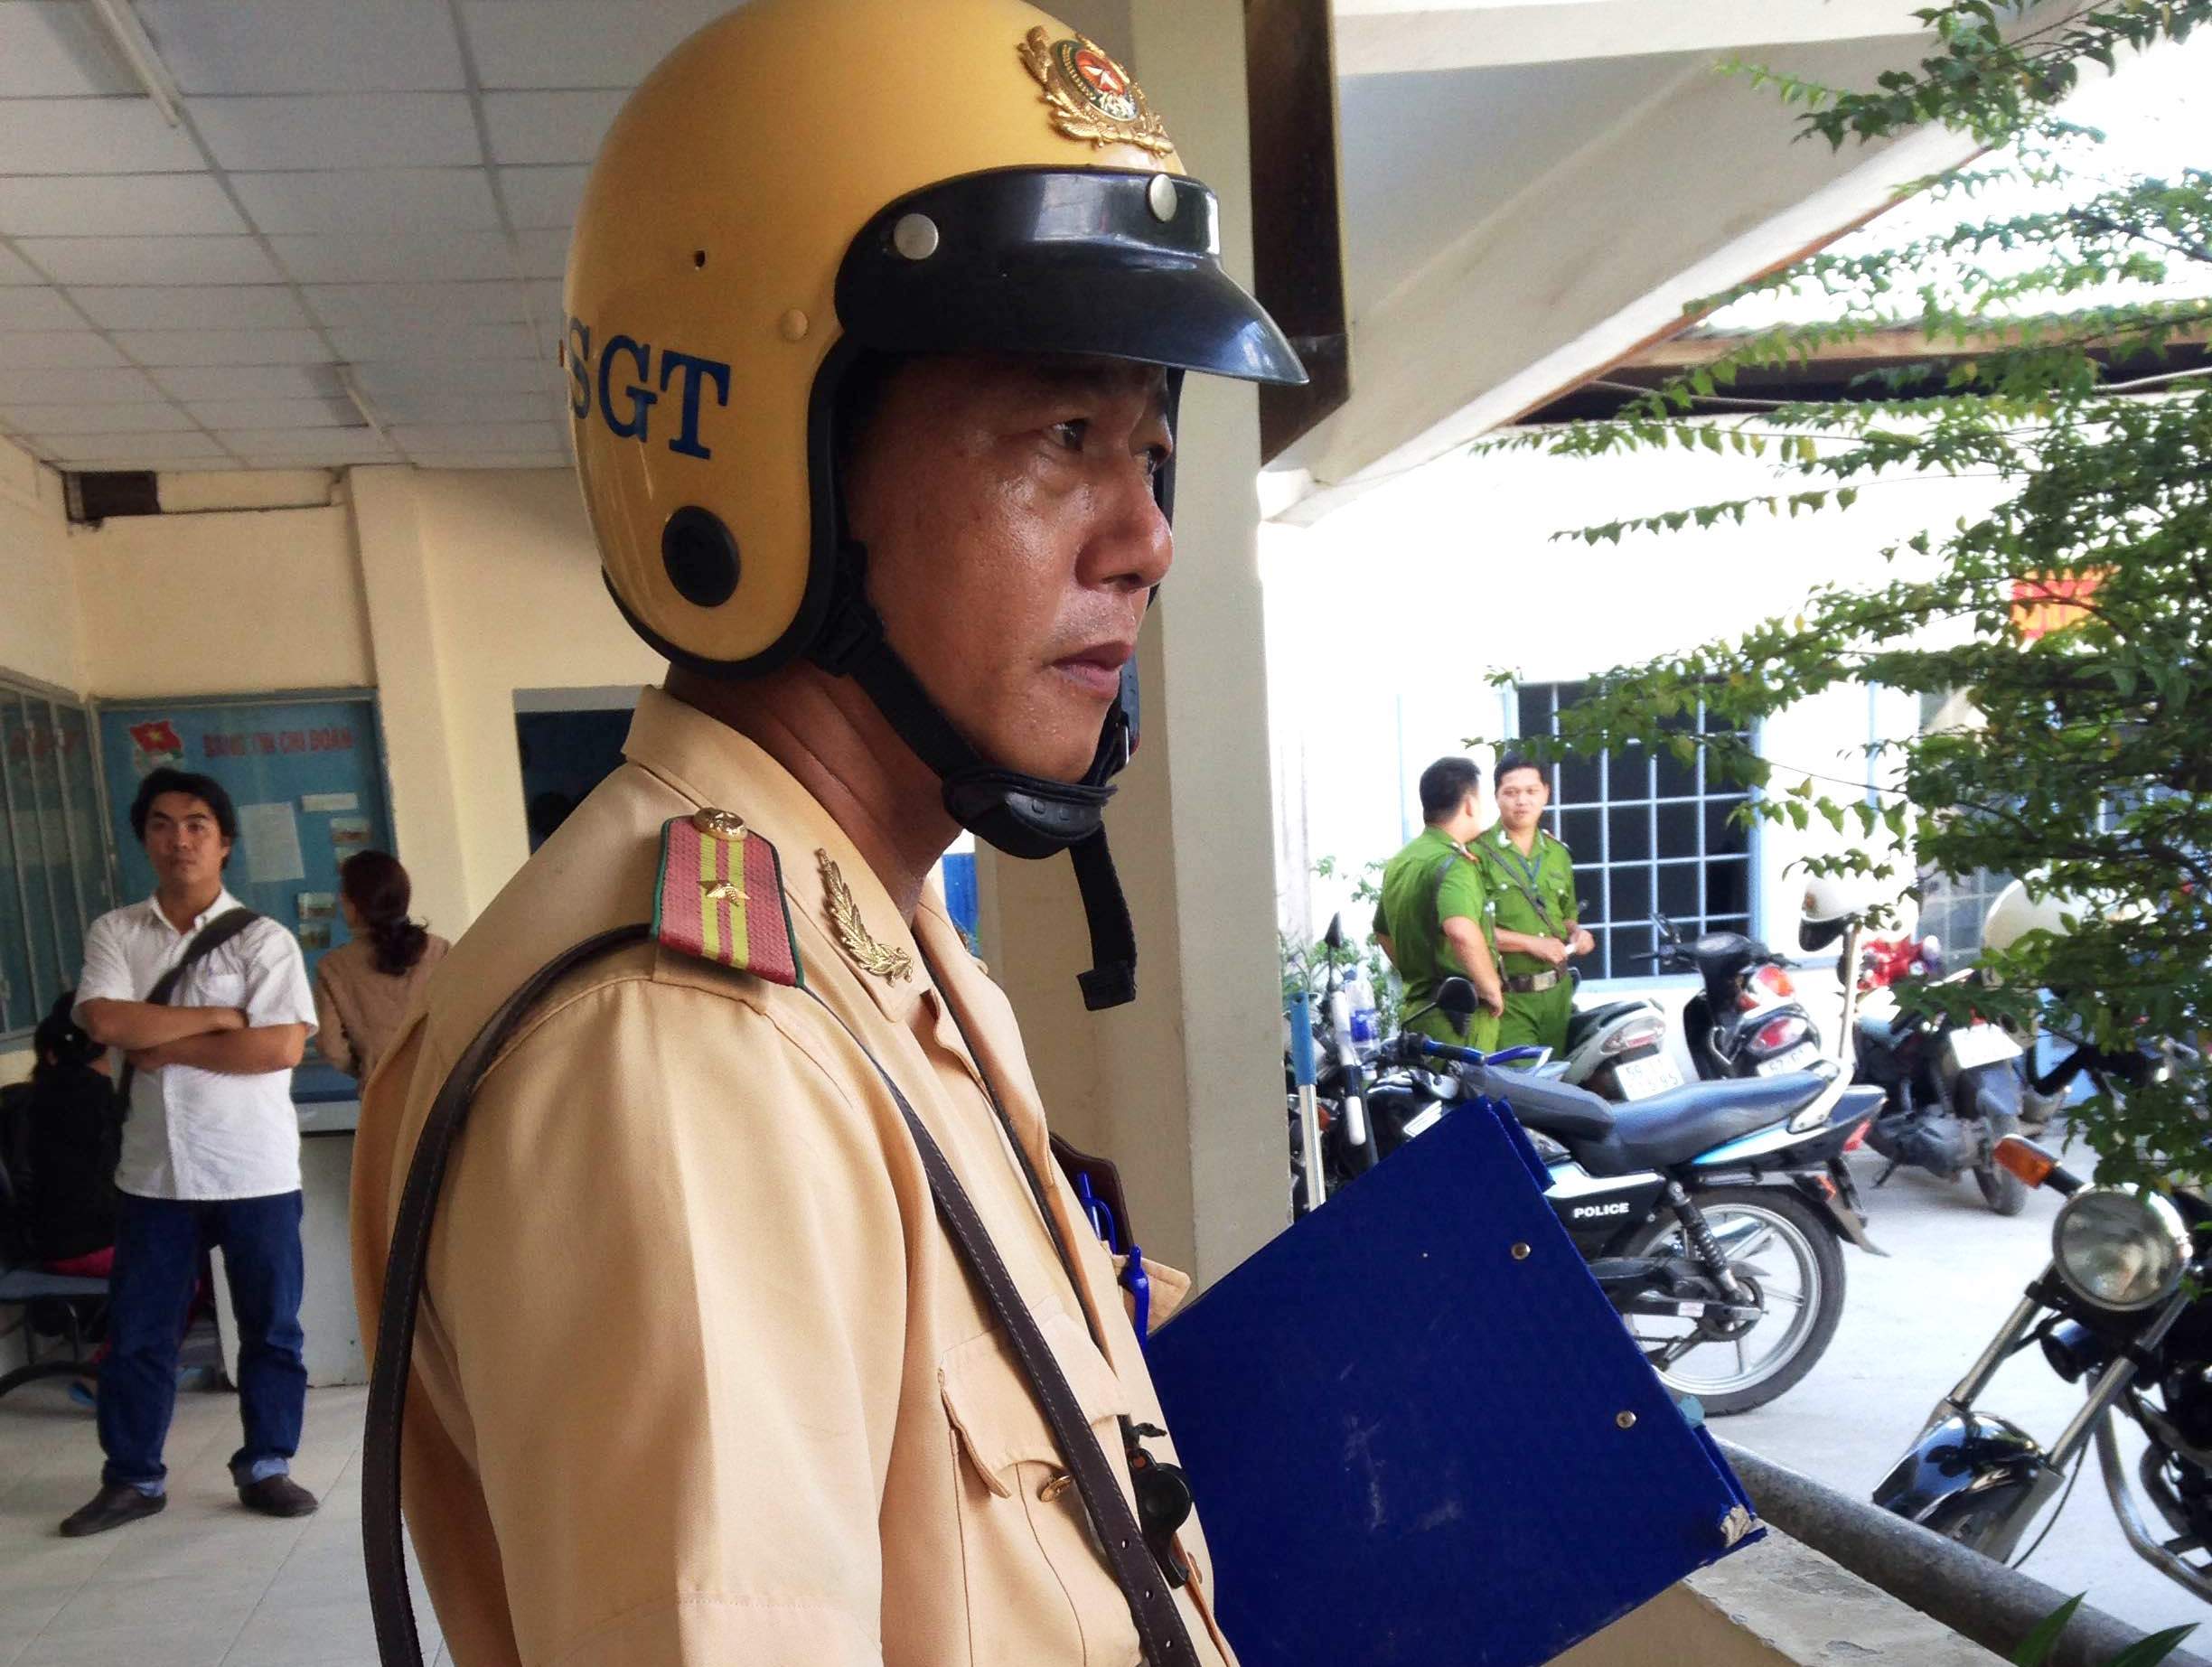 Thiếu tá CSGT Phạm Hoài Hiền bị thương ở hai tay do sức nóng từ capô